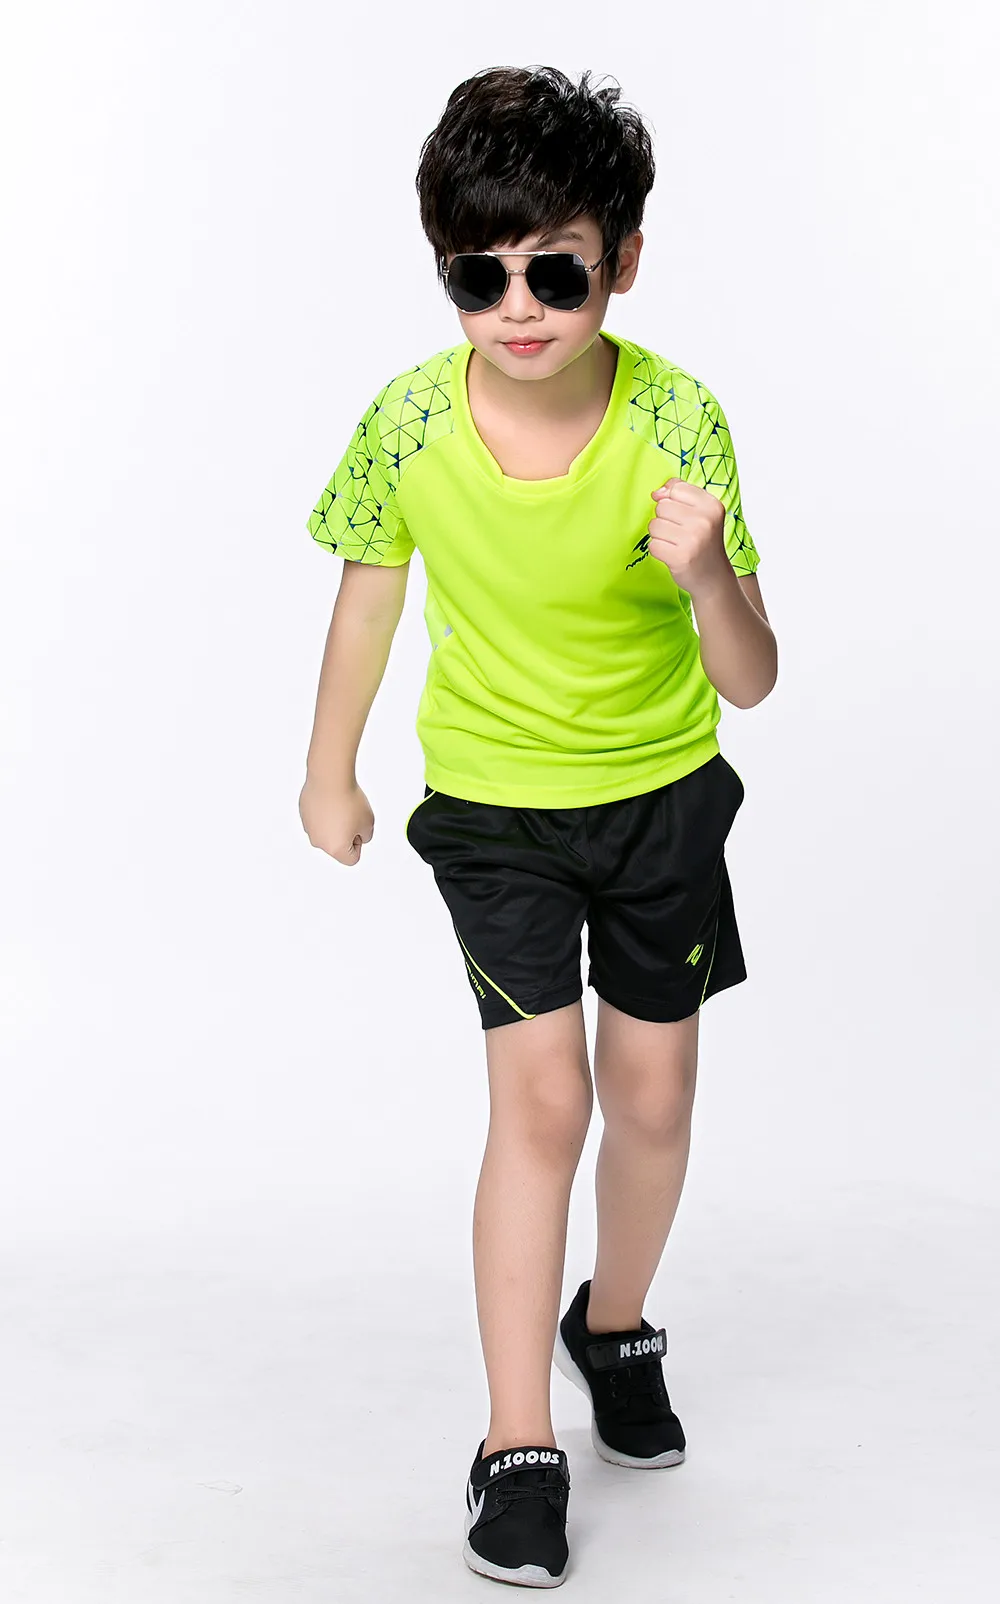 Печать Дети теннис одежда рубашка для мальчика, спортивная детская настольным теннисом Одежда для девочек обучение, баскетбол, бадминтон одежда костюм 5067